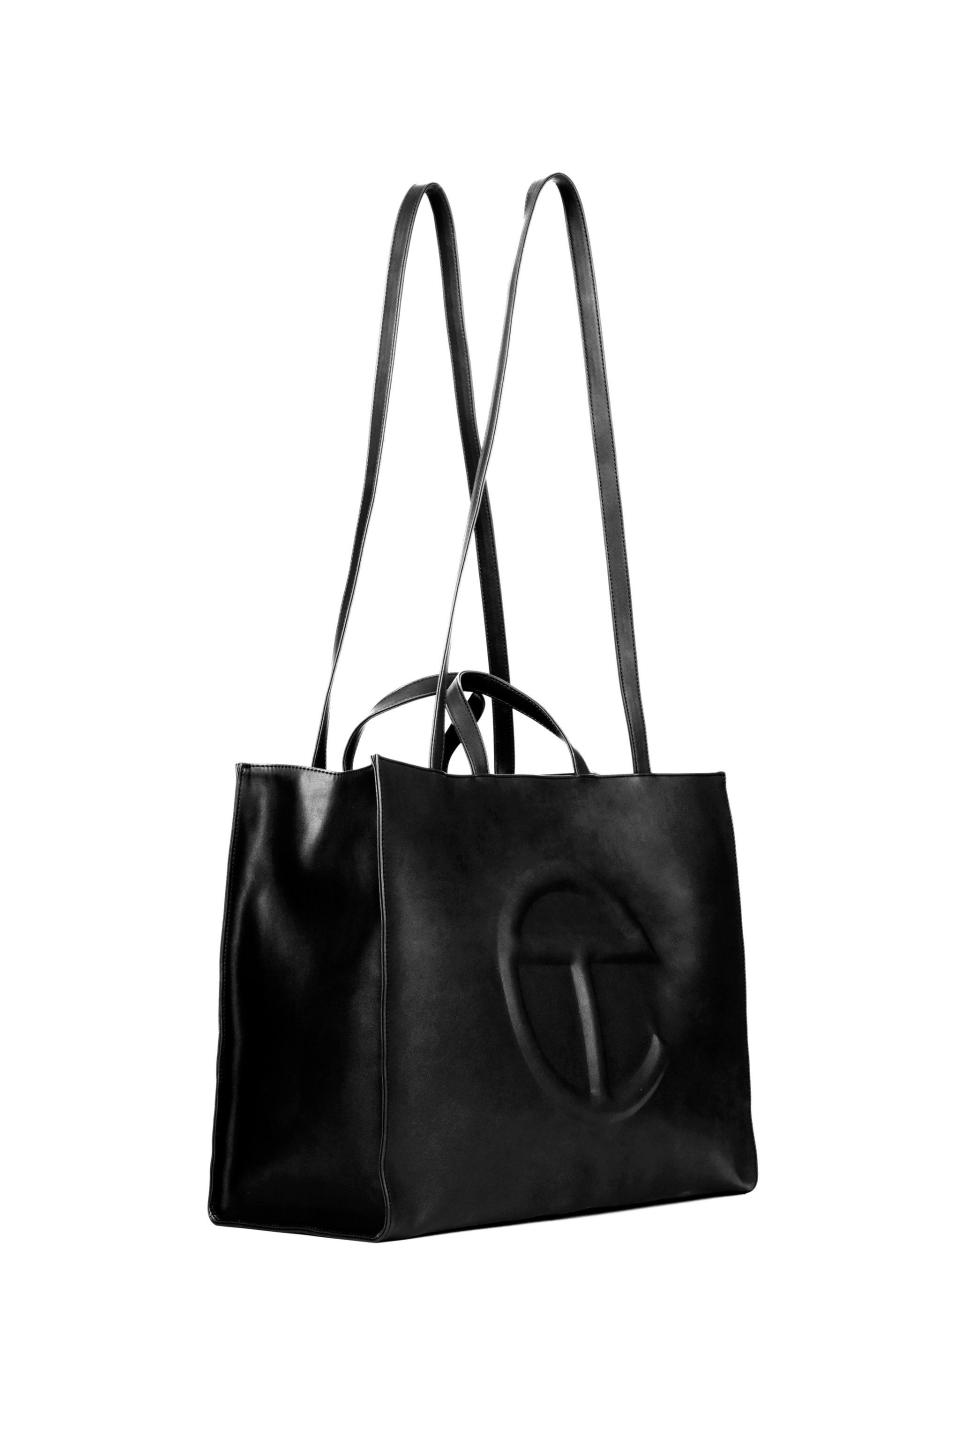 3) Large Black Shopping Bag